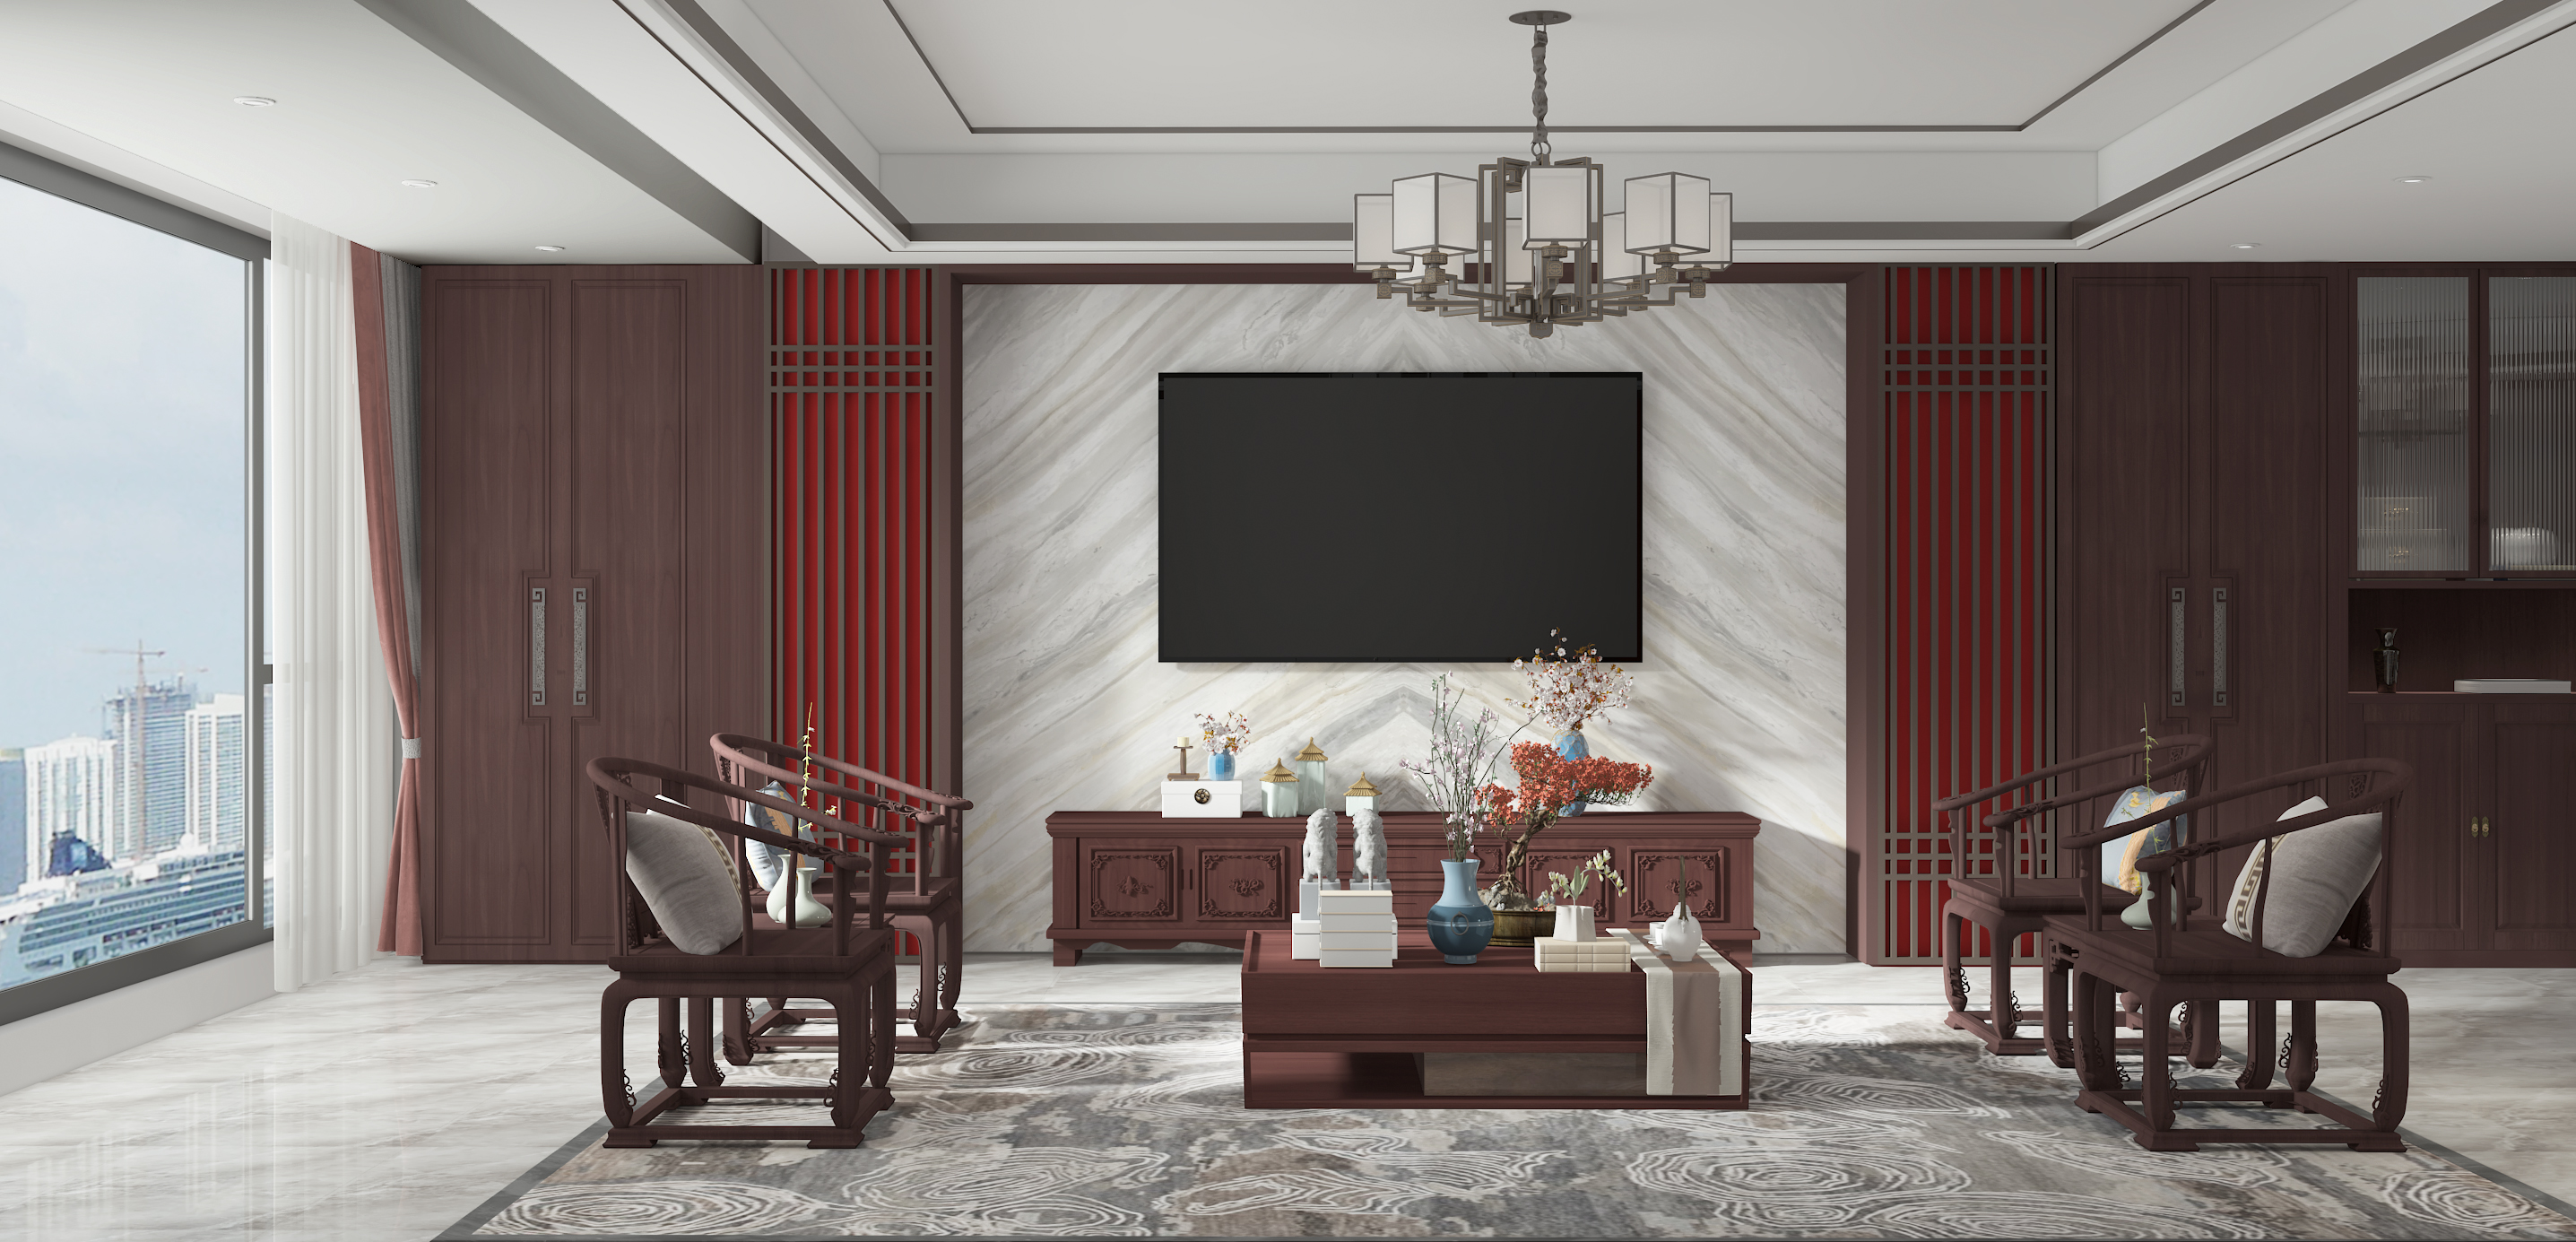 《中式》家具室内风格设计作品